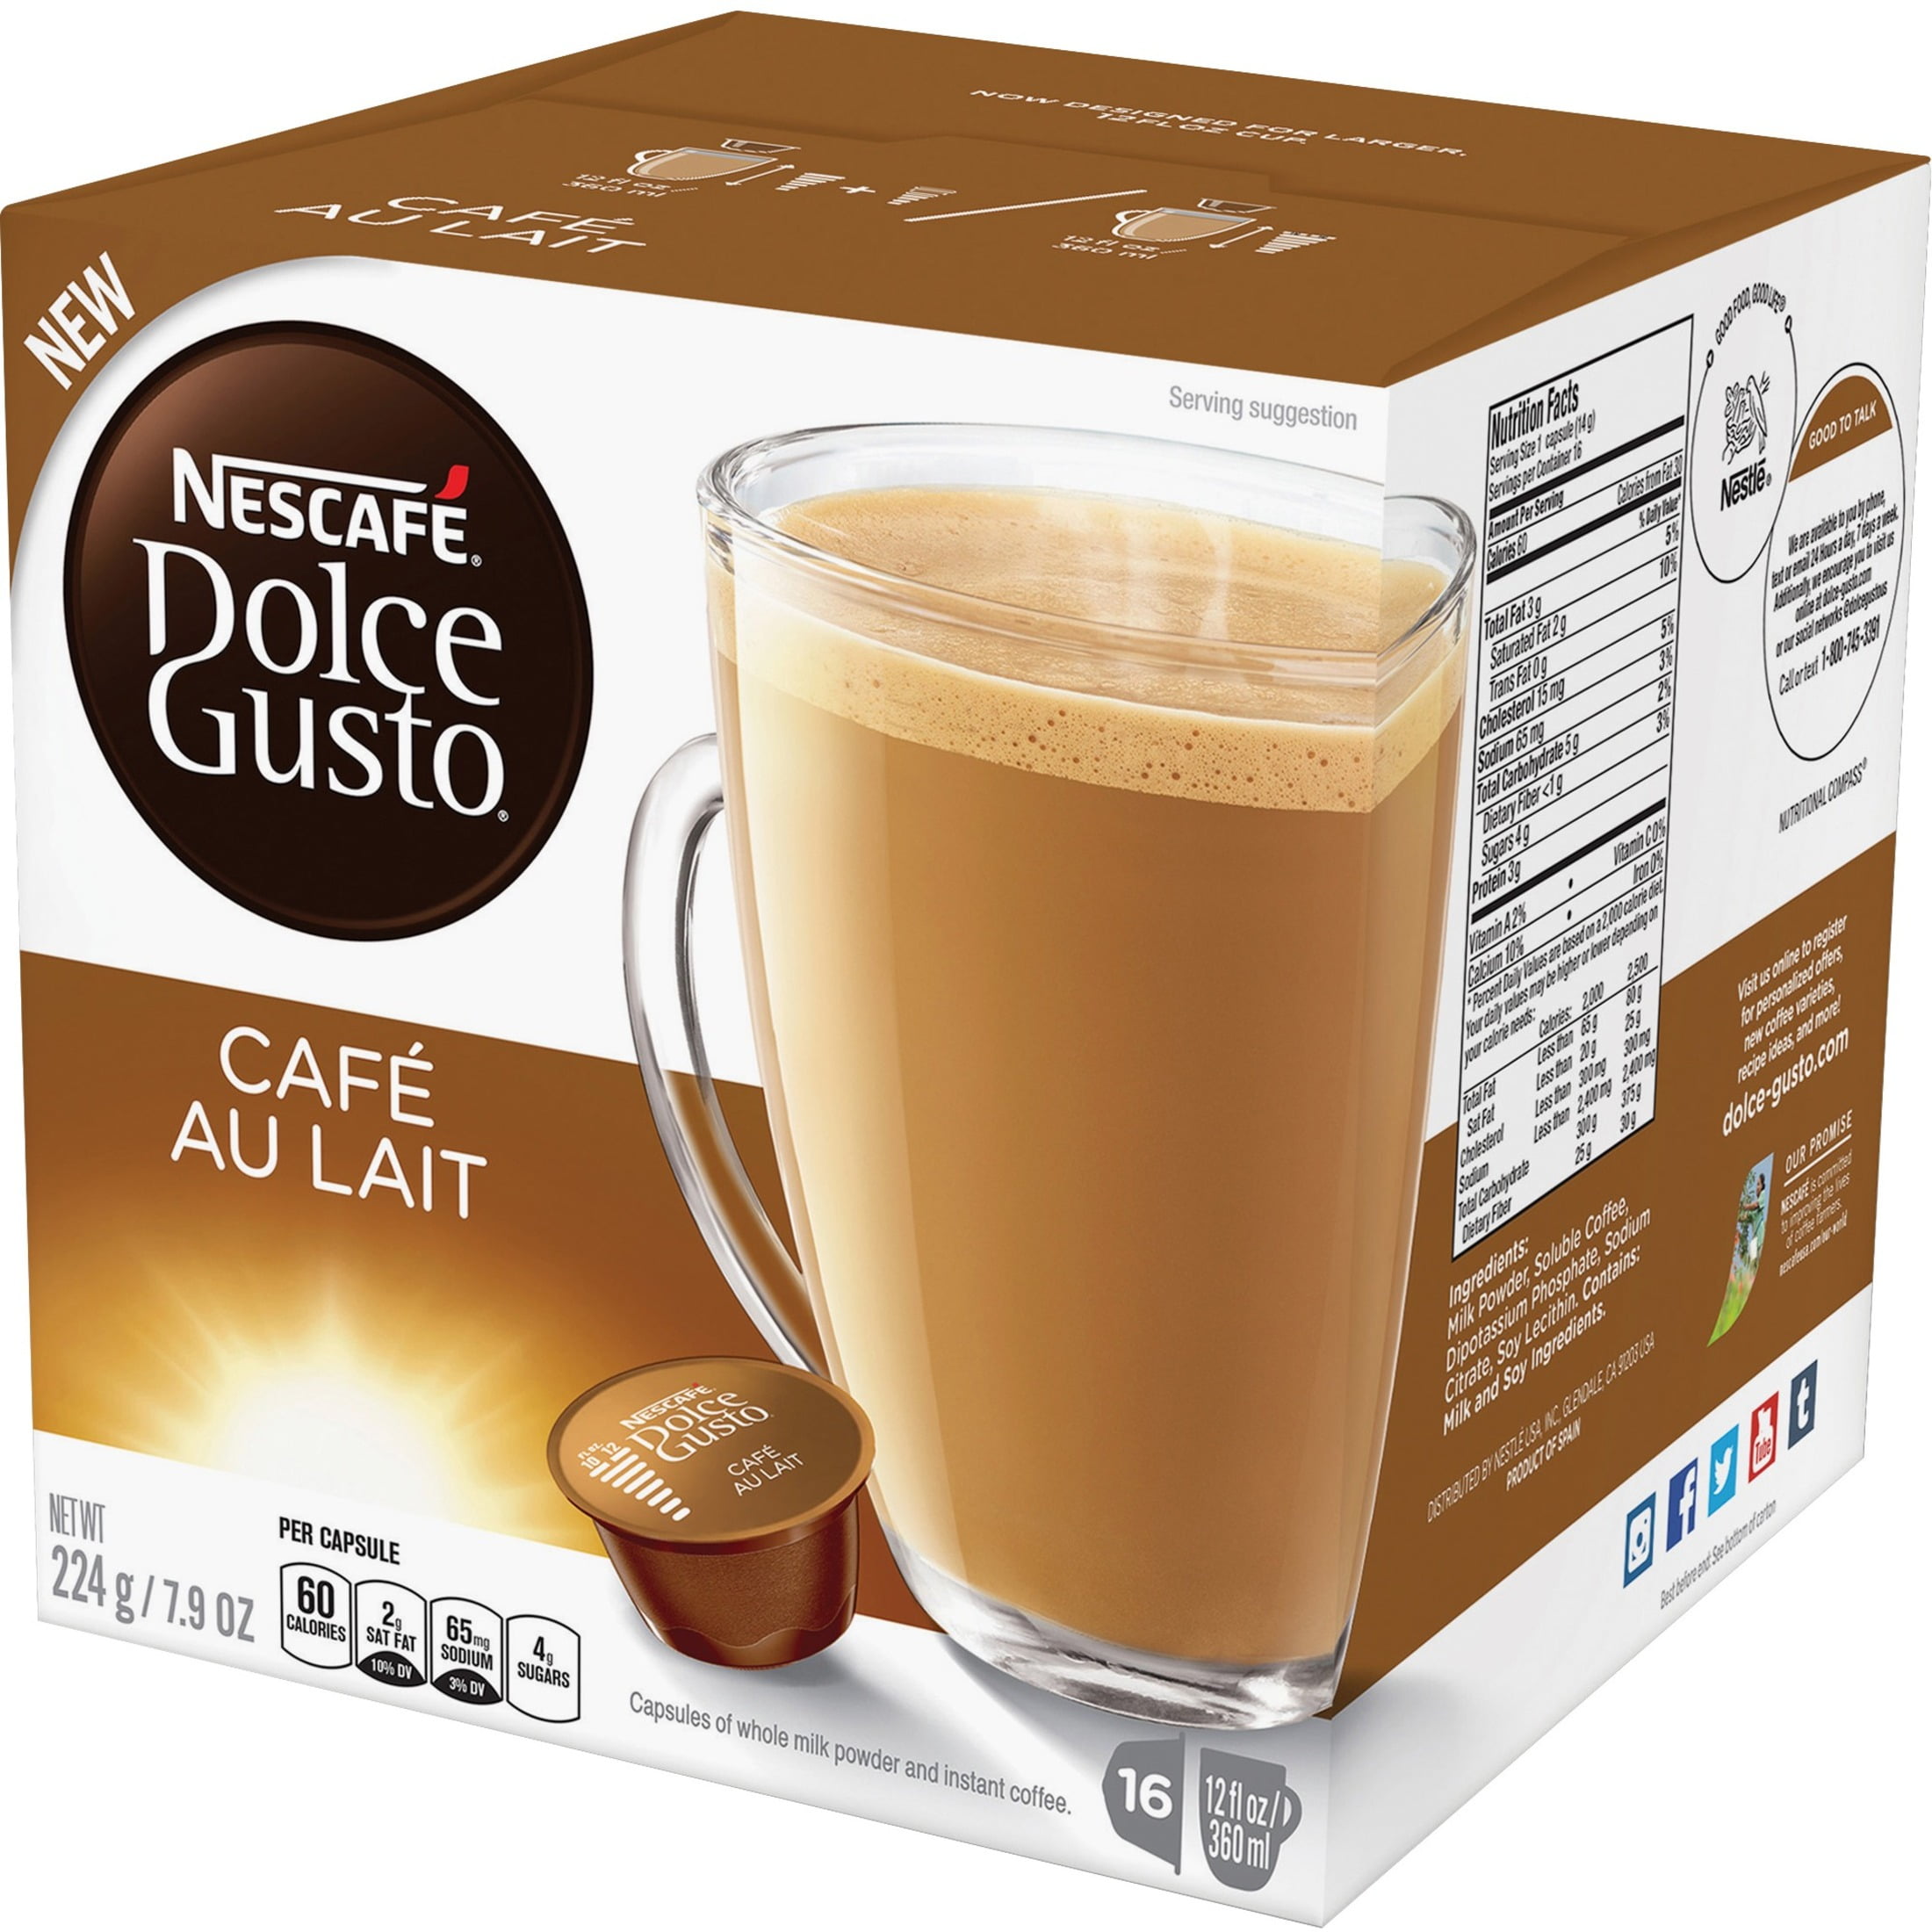 Nescafé Dolce Gusto Cafe au lait 16 Capsules desde 3,99